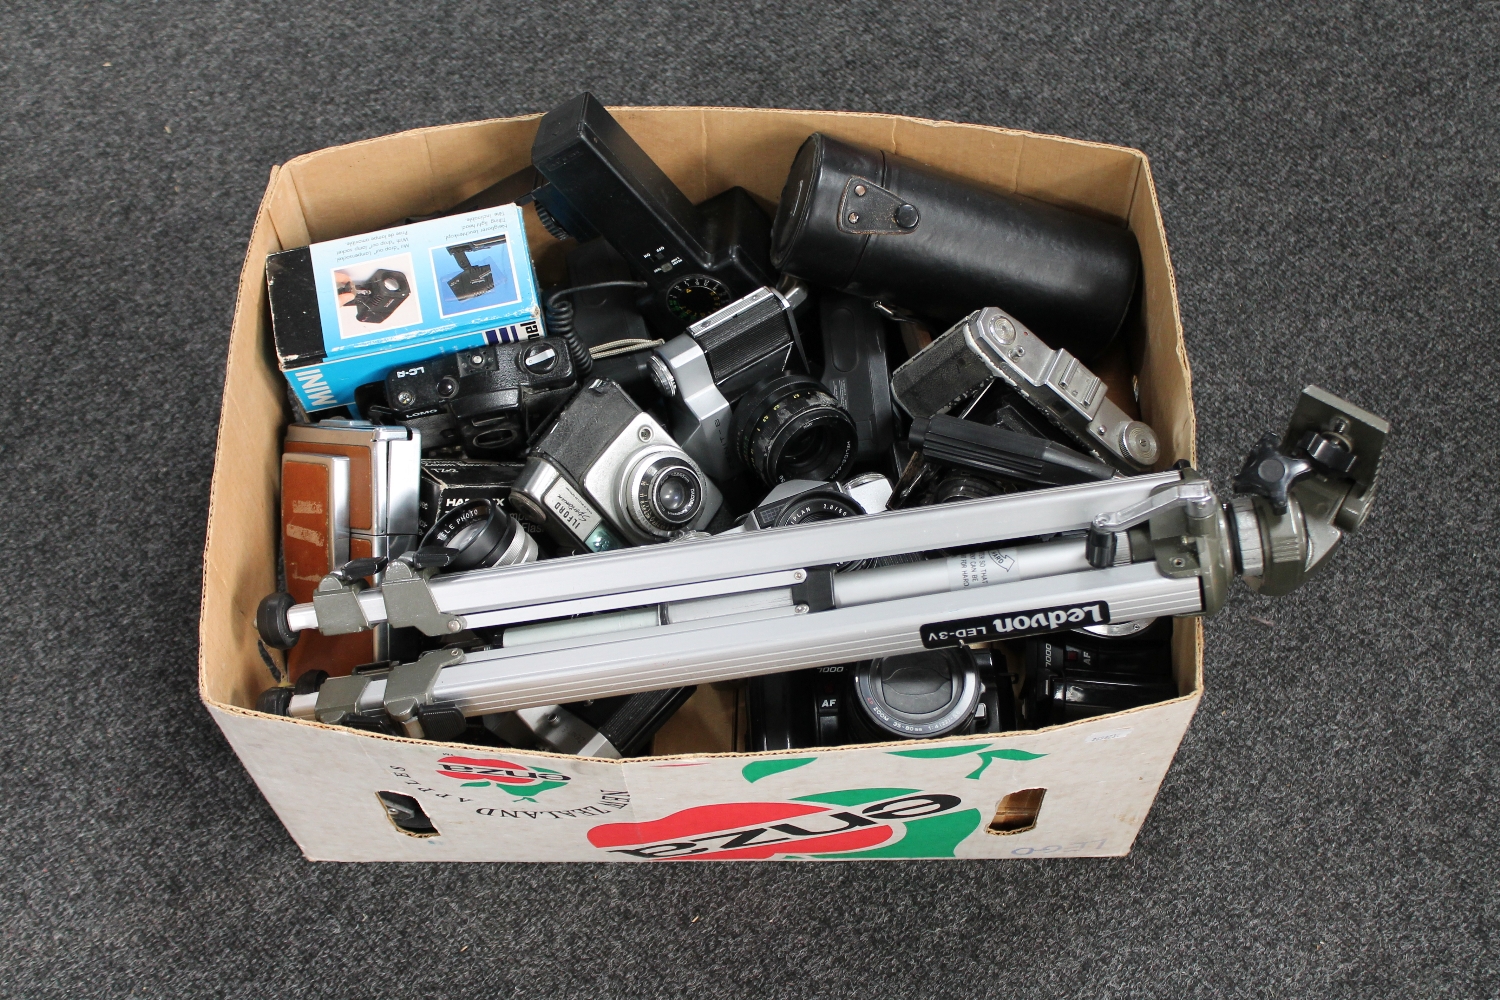 A box of assorted cameras,